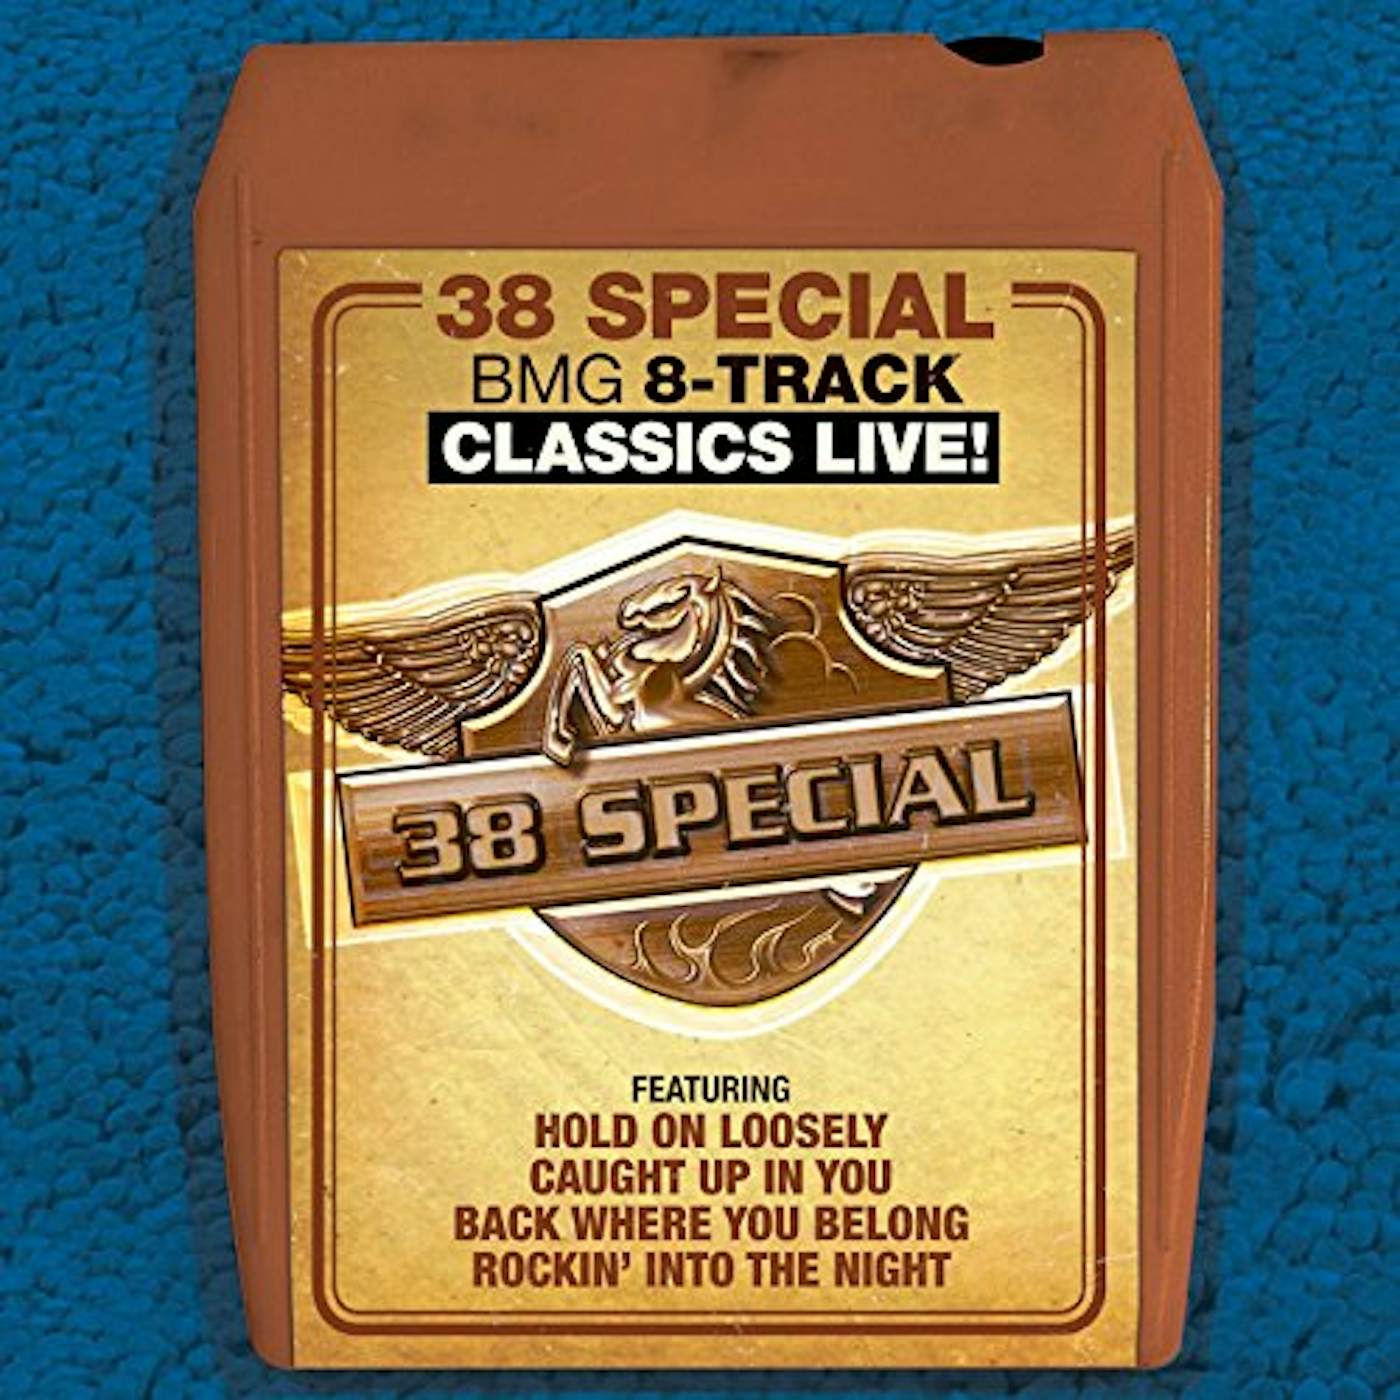 38 Special BMG 8-TRACK CLASSICS LIVE CD